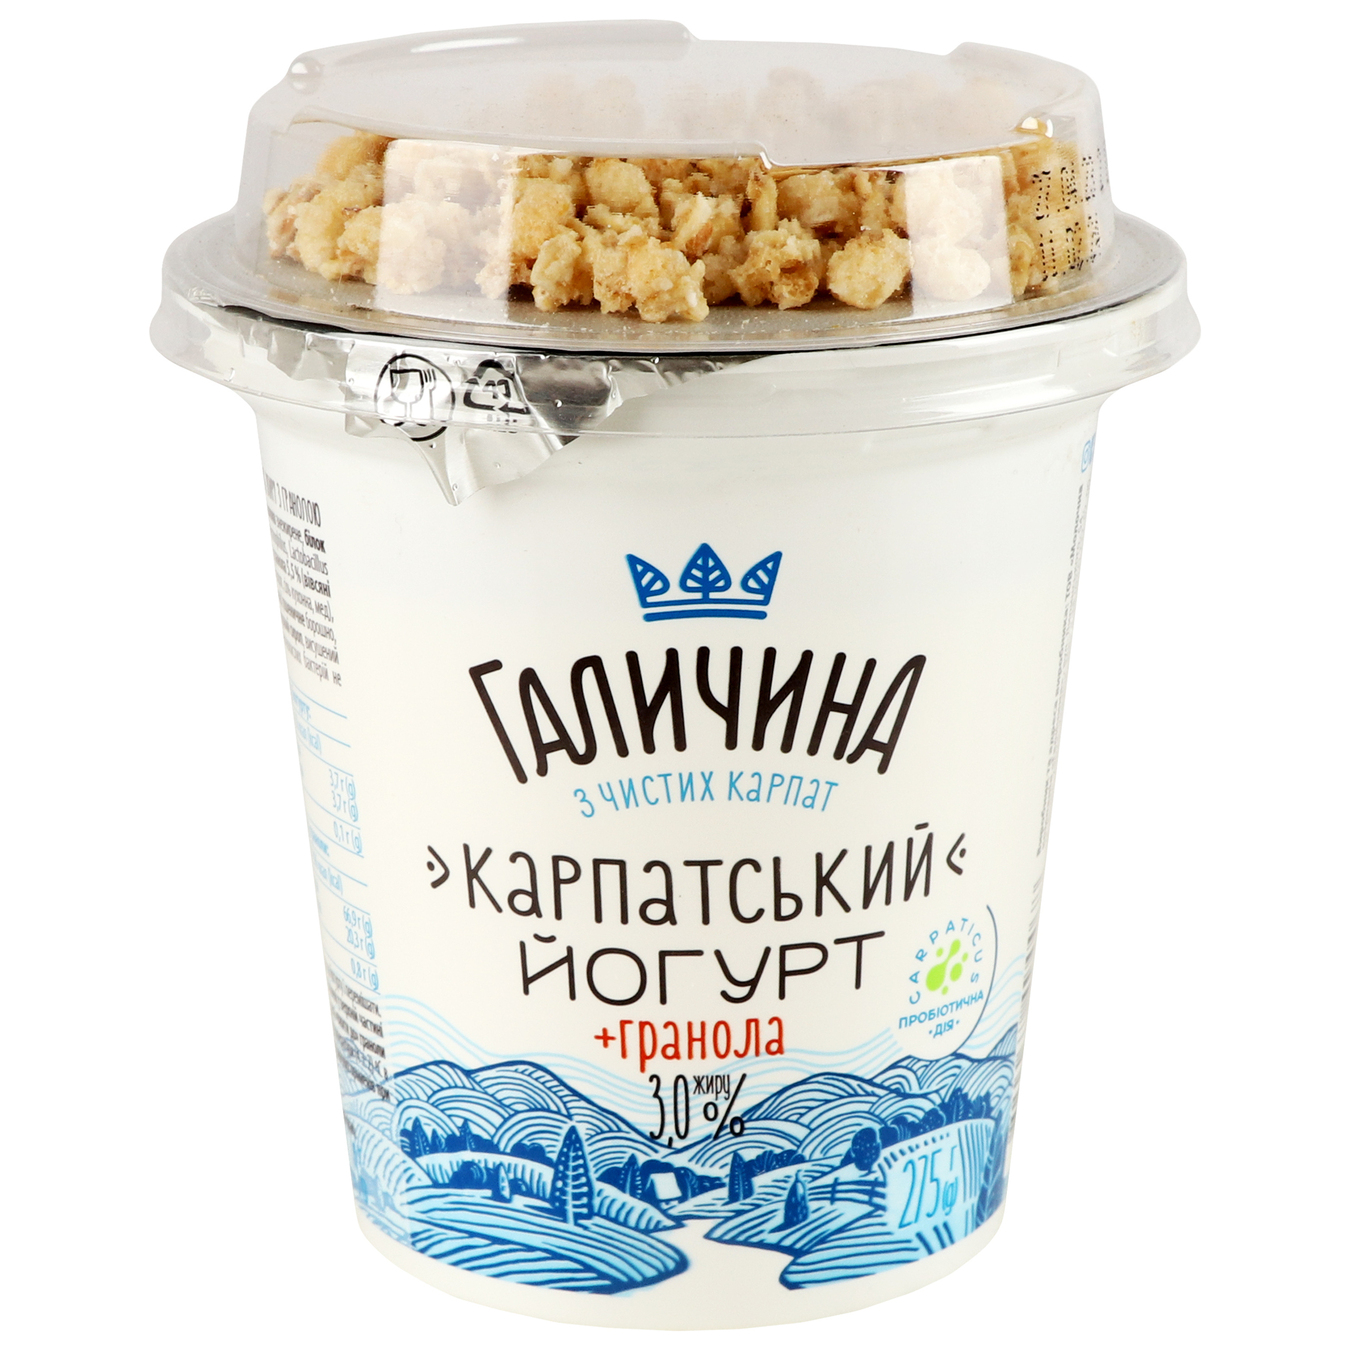 Galychyna Carpathian Sugar-Free Granola Flavored Yogurt 3% 275g 4